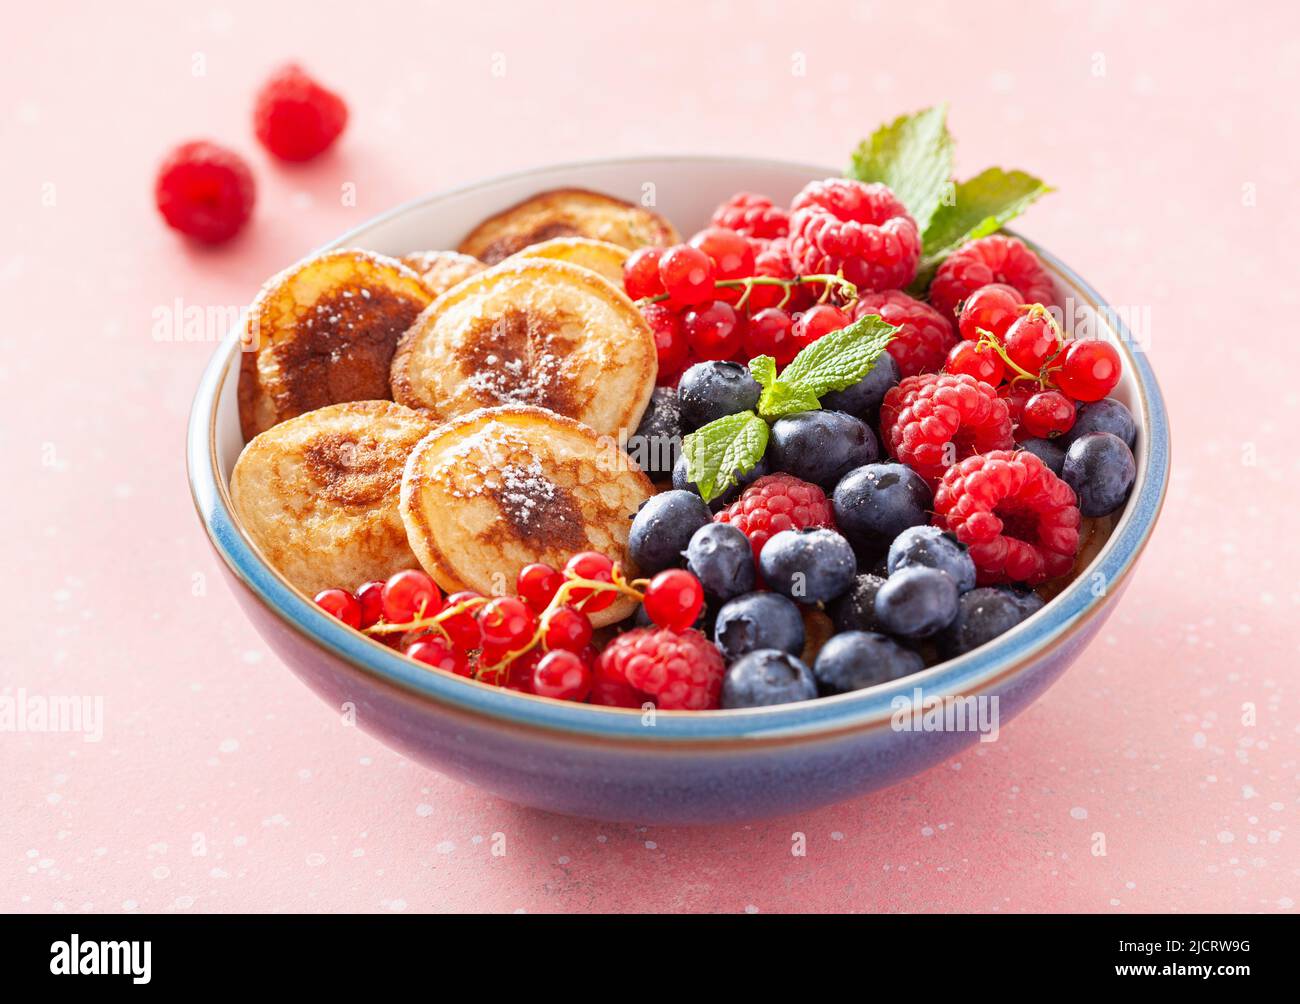 mini plato de desayuno con panqueques, bayas y jarabe de arce Foto de stock